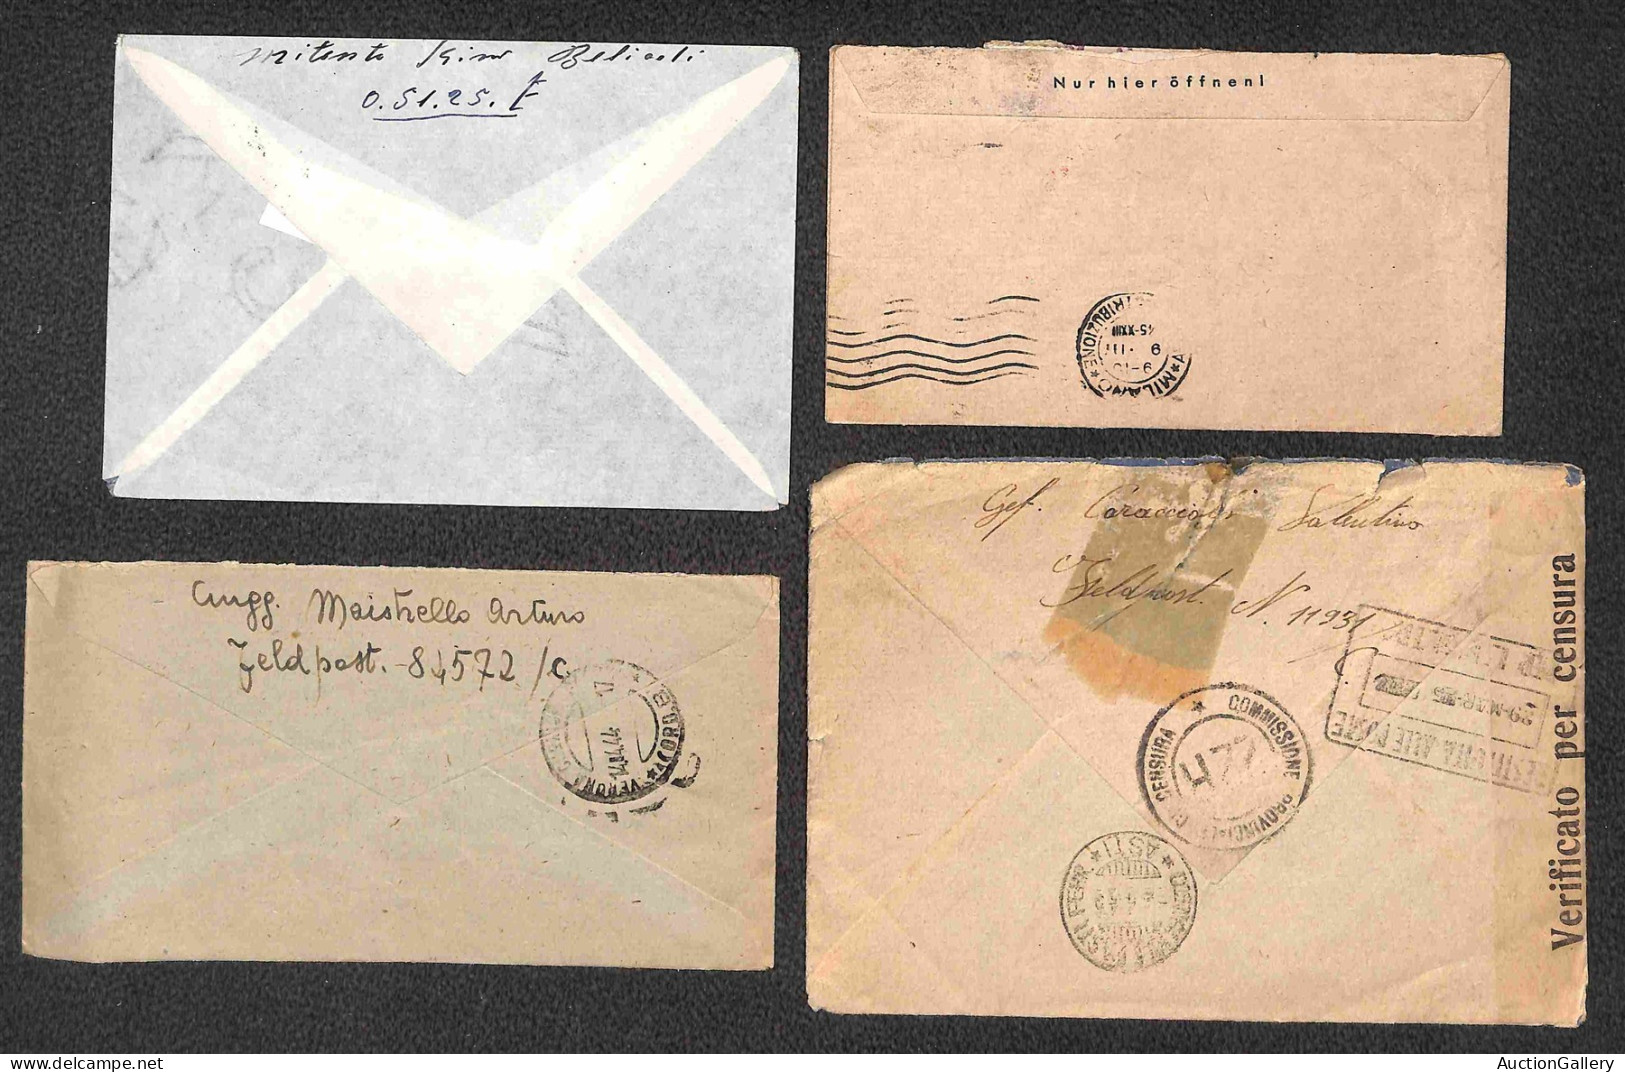 Europa - Germania - Feldpost - 1944/1945 - 15 buste + 2 cartoline del periodo per l'Italia